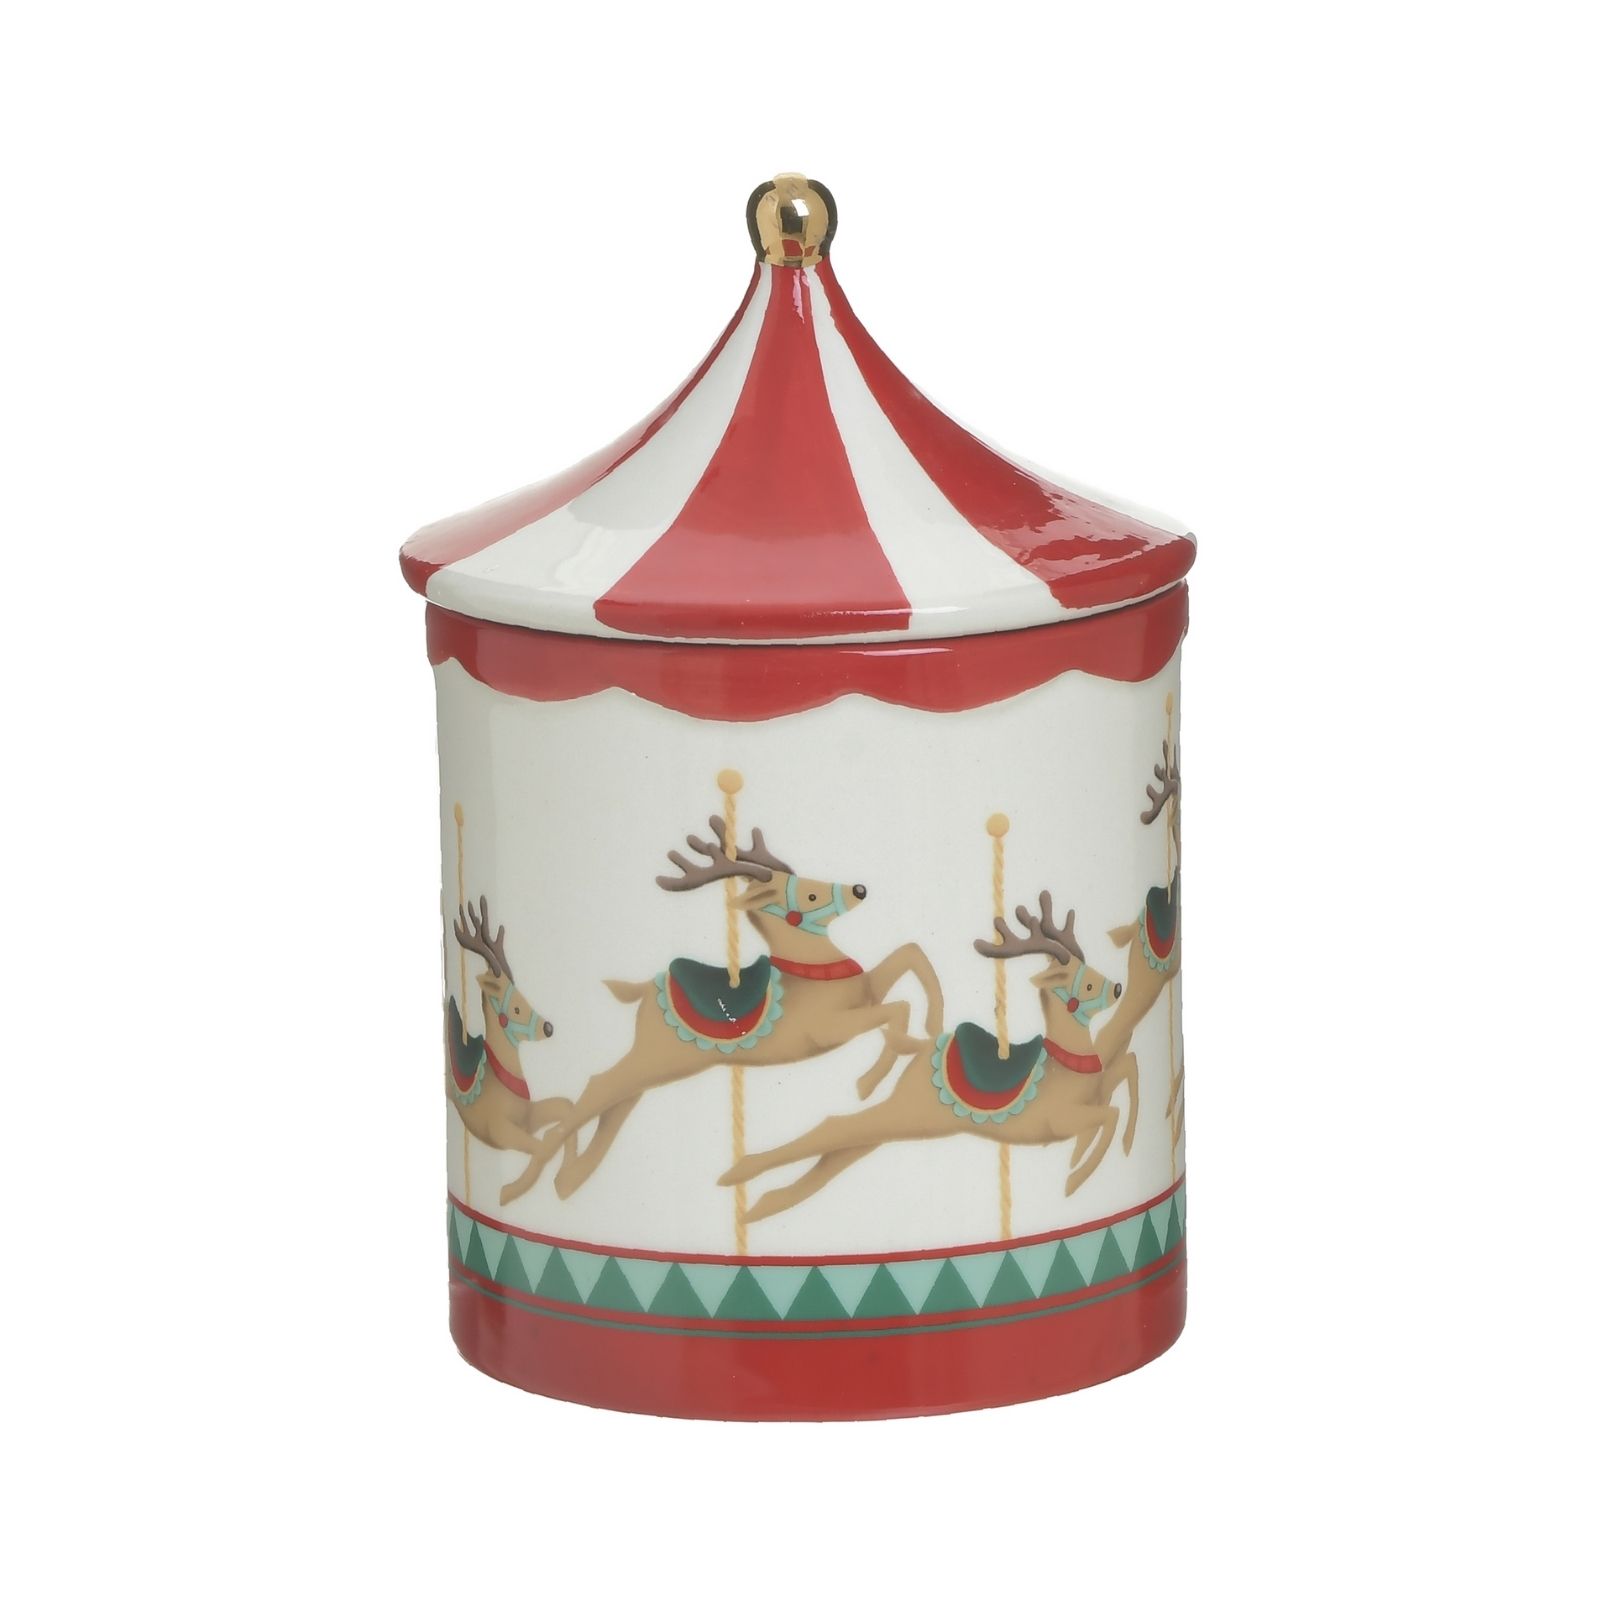 Decoratiuni de Craciun - Recipient ceramic cu capac Carousel Craciun 22 cm Inart, hectarul.ro